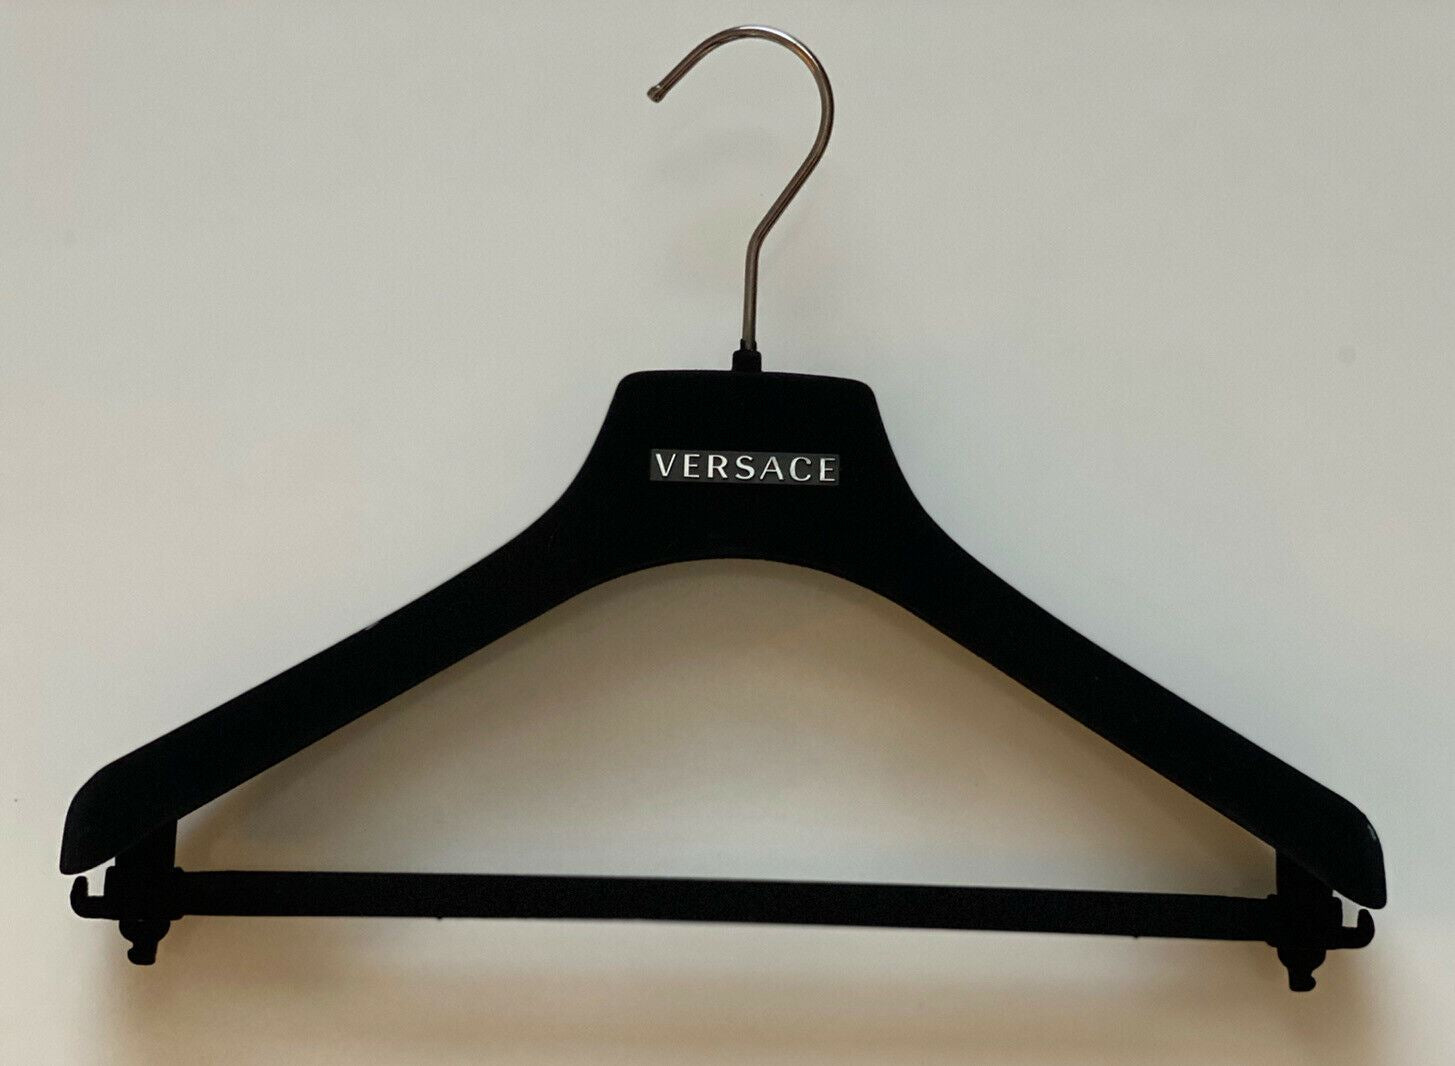 VERSACE Black Velvet Blazer Coat Suit Hangers with Silver Hardware 17.5x6.75